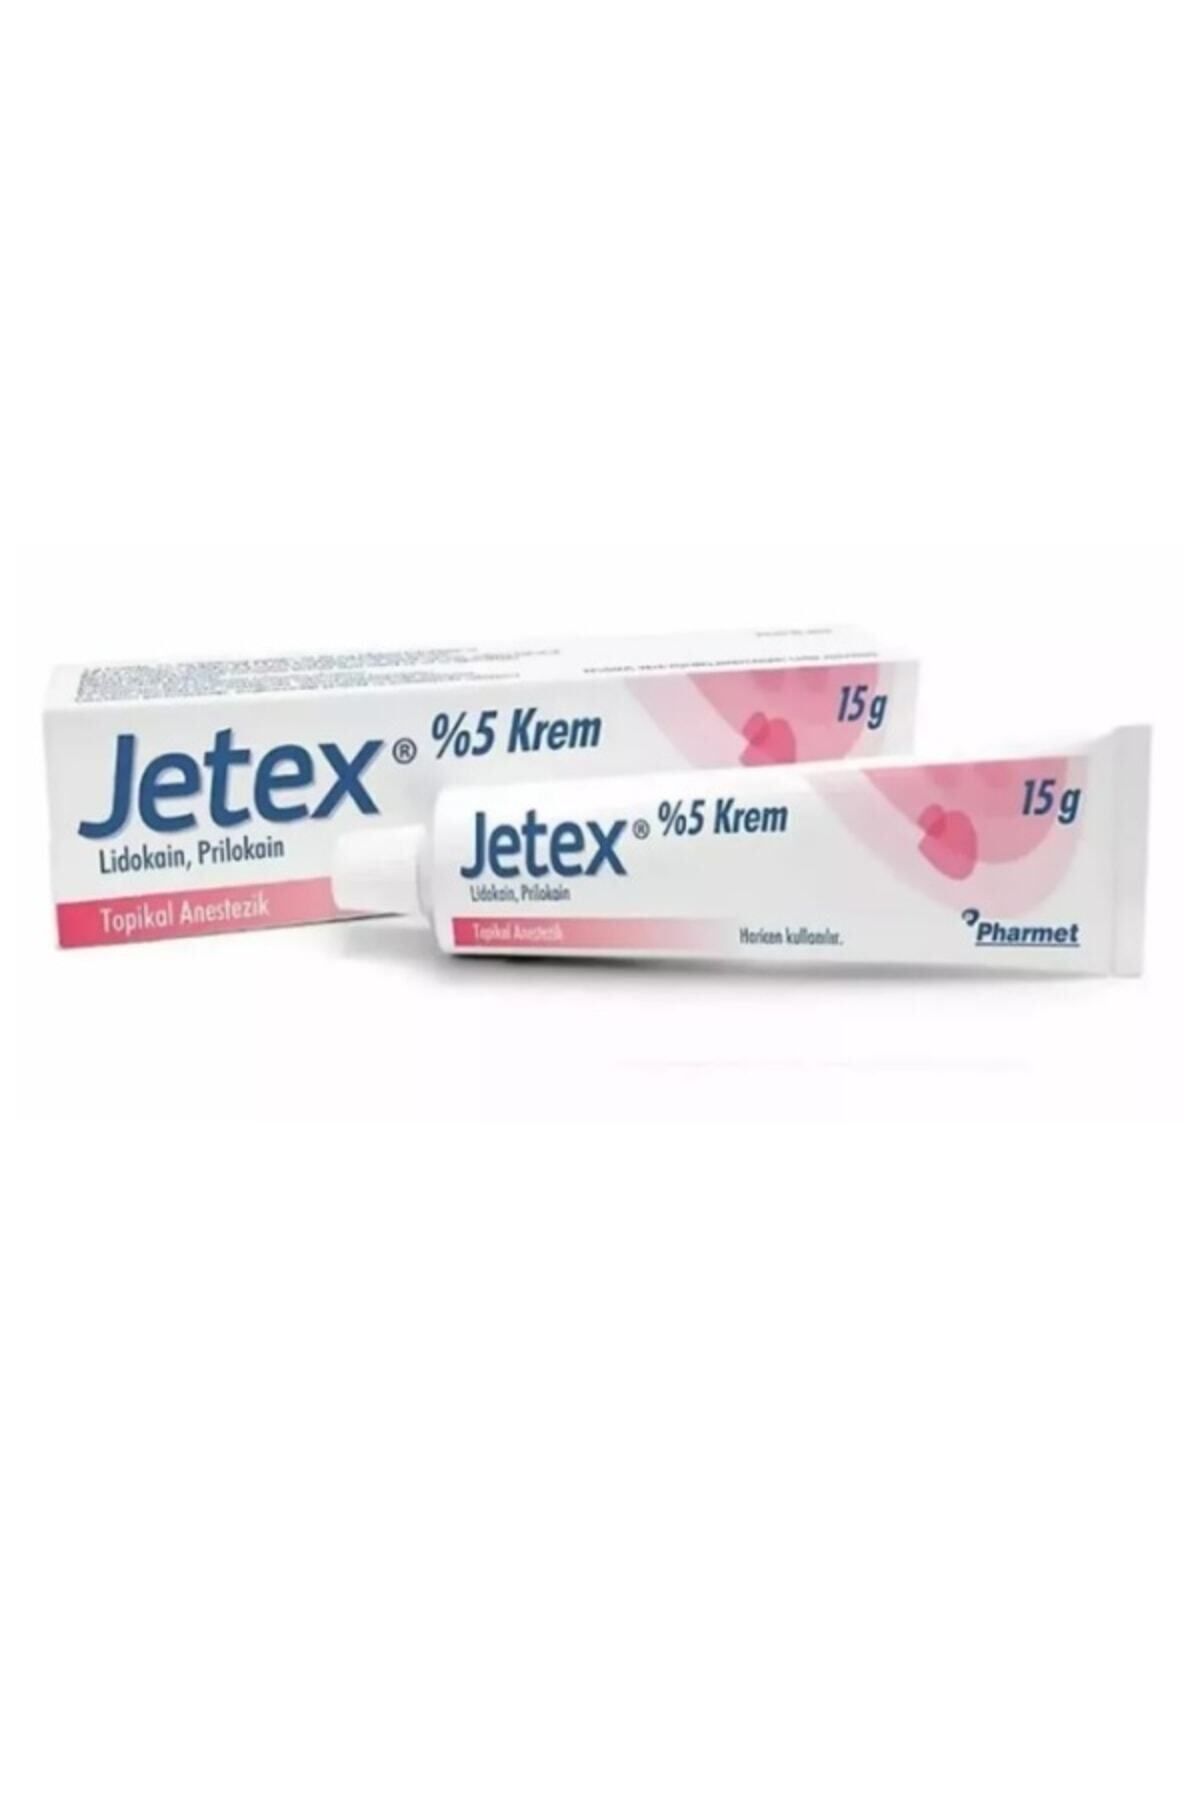 PHARMET Jetex %5 Krem 15 G